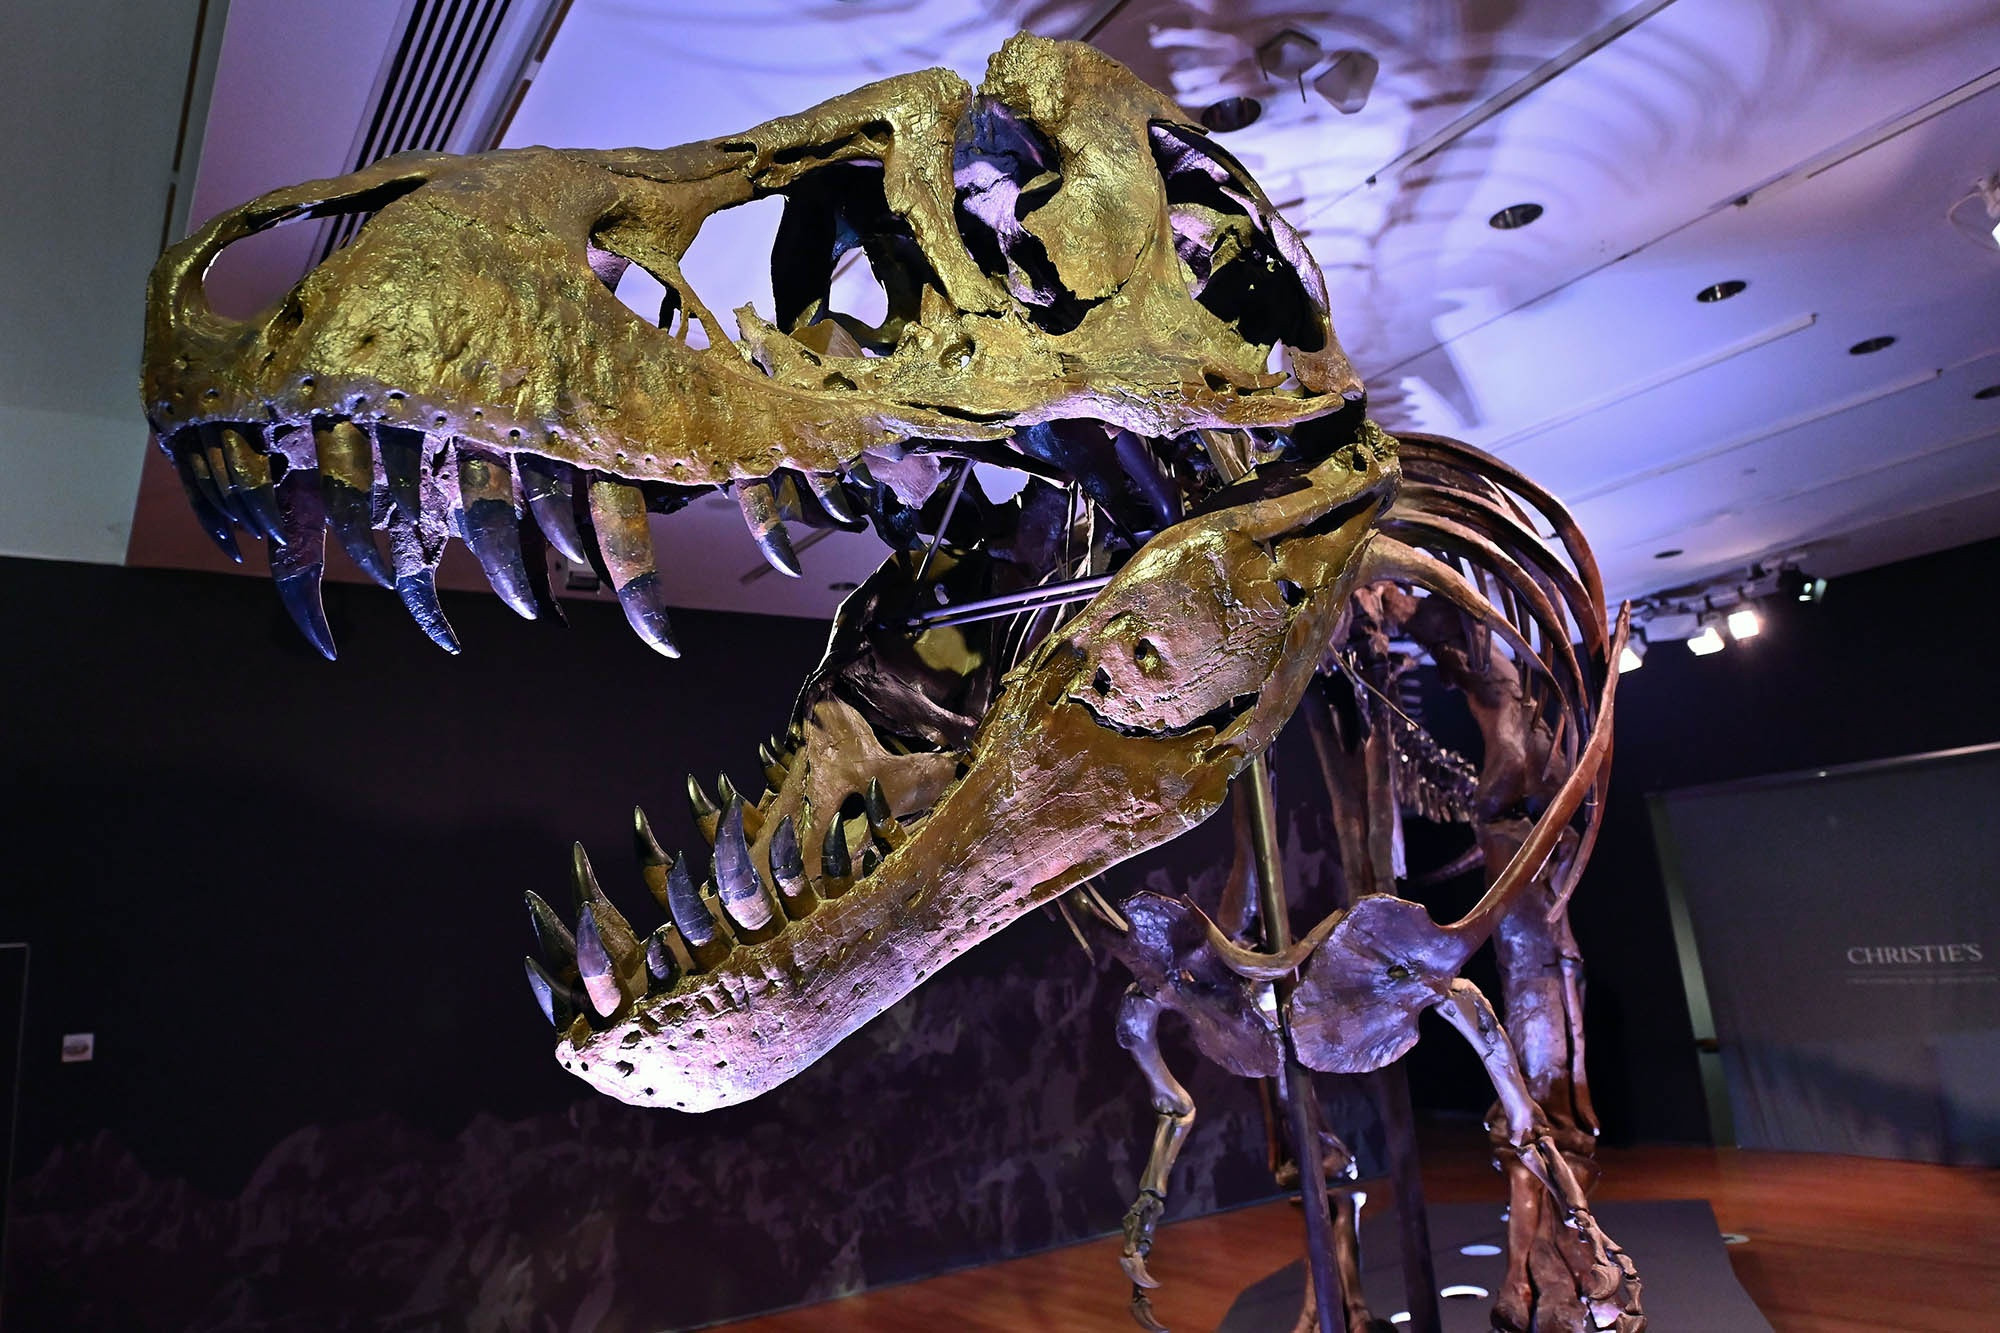 “斯坦”去年在纽约佳士得拍卖会上，以3180万美元（约人民币2亿元）的价格成交，创下了恐龙骨架化石拍卖的新纪录。 资料图